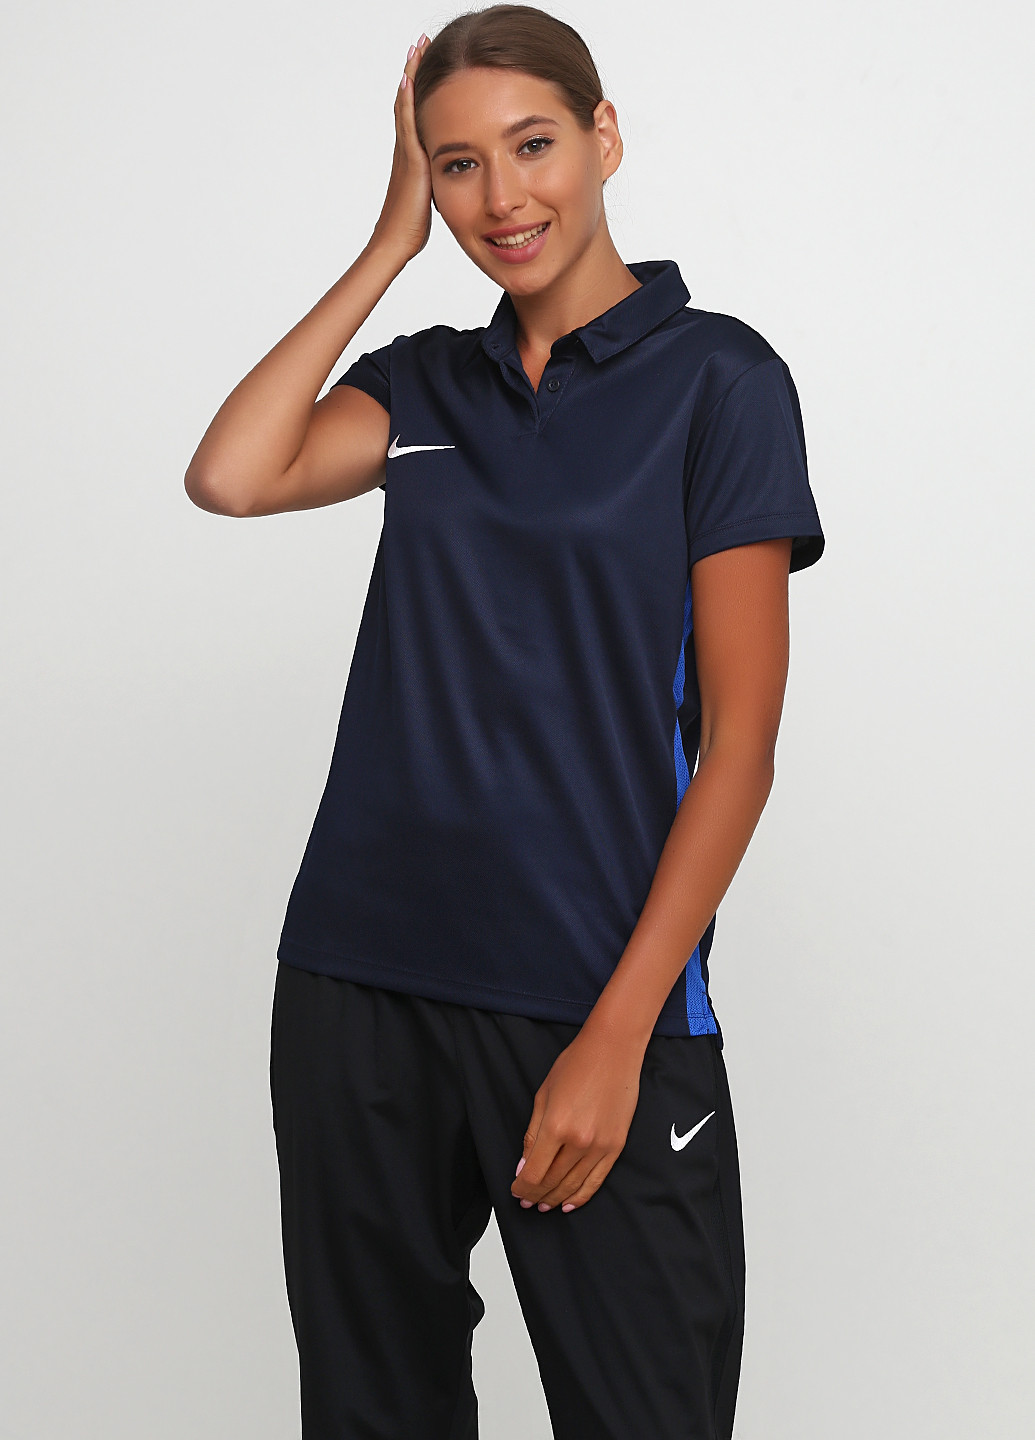 Футболка Nike Women's Dry Academy18 Football Polo 899986-451